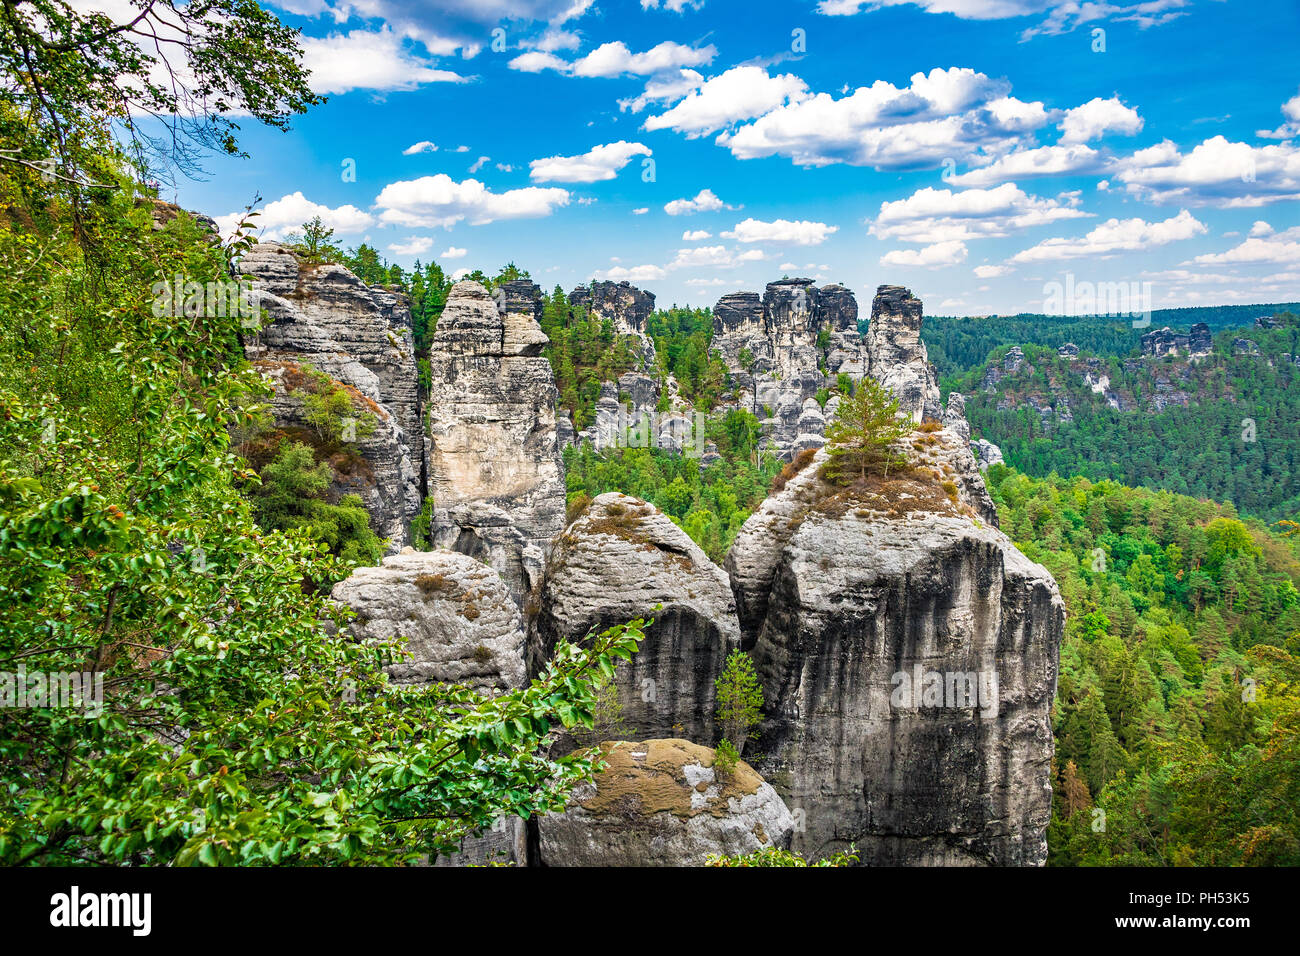 Les montagnes de grès de l'Elbe fait partie de la Suisse Saxonne Parc National en Allemagne Banque D'Images